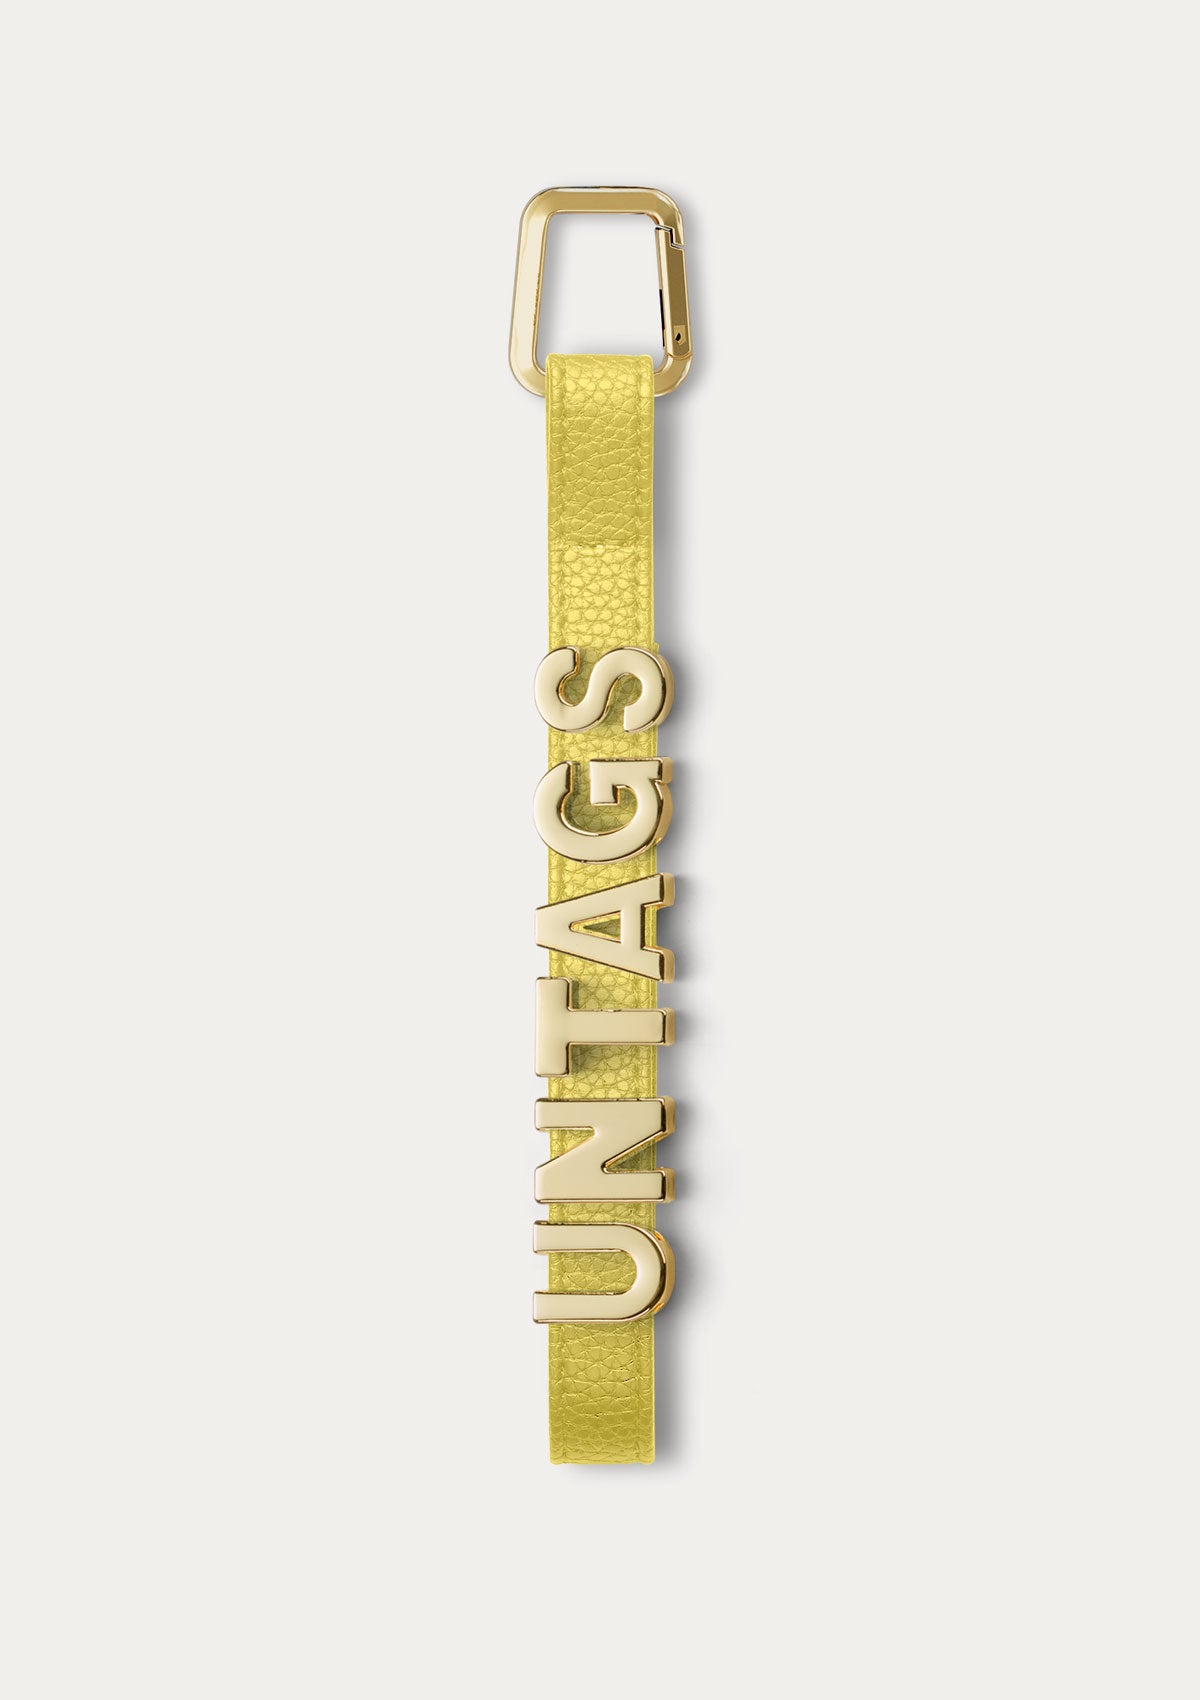 Phone Strap personalizzabile Untags di colore gialla per iPhone con lettere in metallo che compongono un testo personalizzato